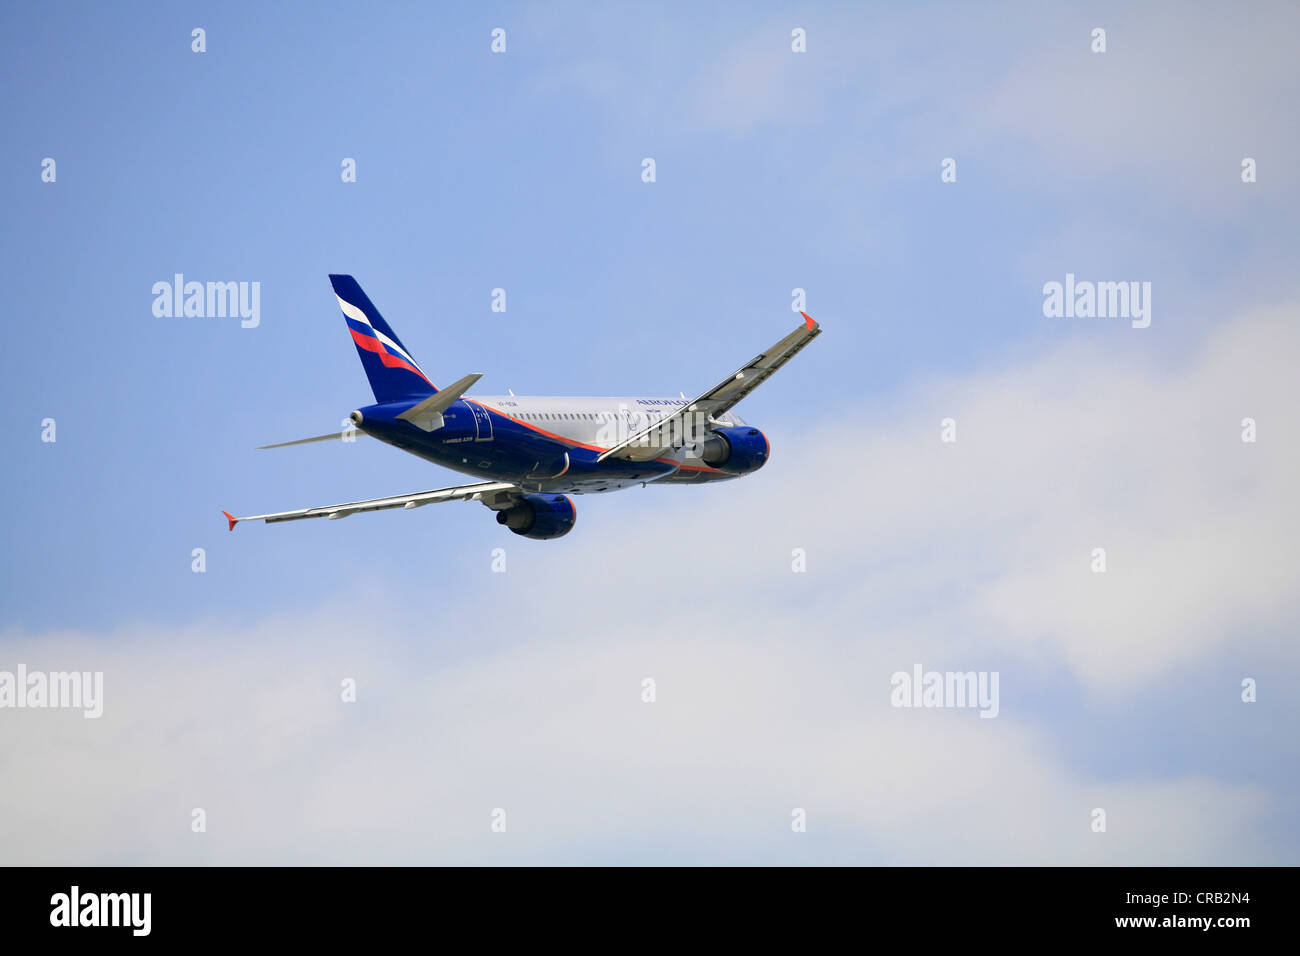 Avion de passagers Airbus A319 d'Aeroflot airlines, pendant la montée Banque D'Images